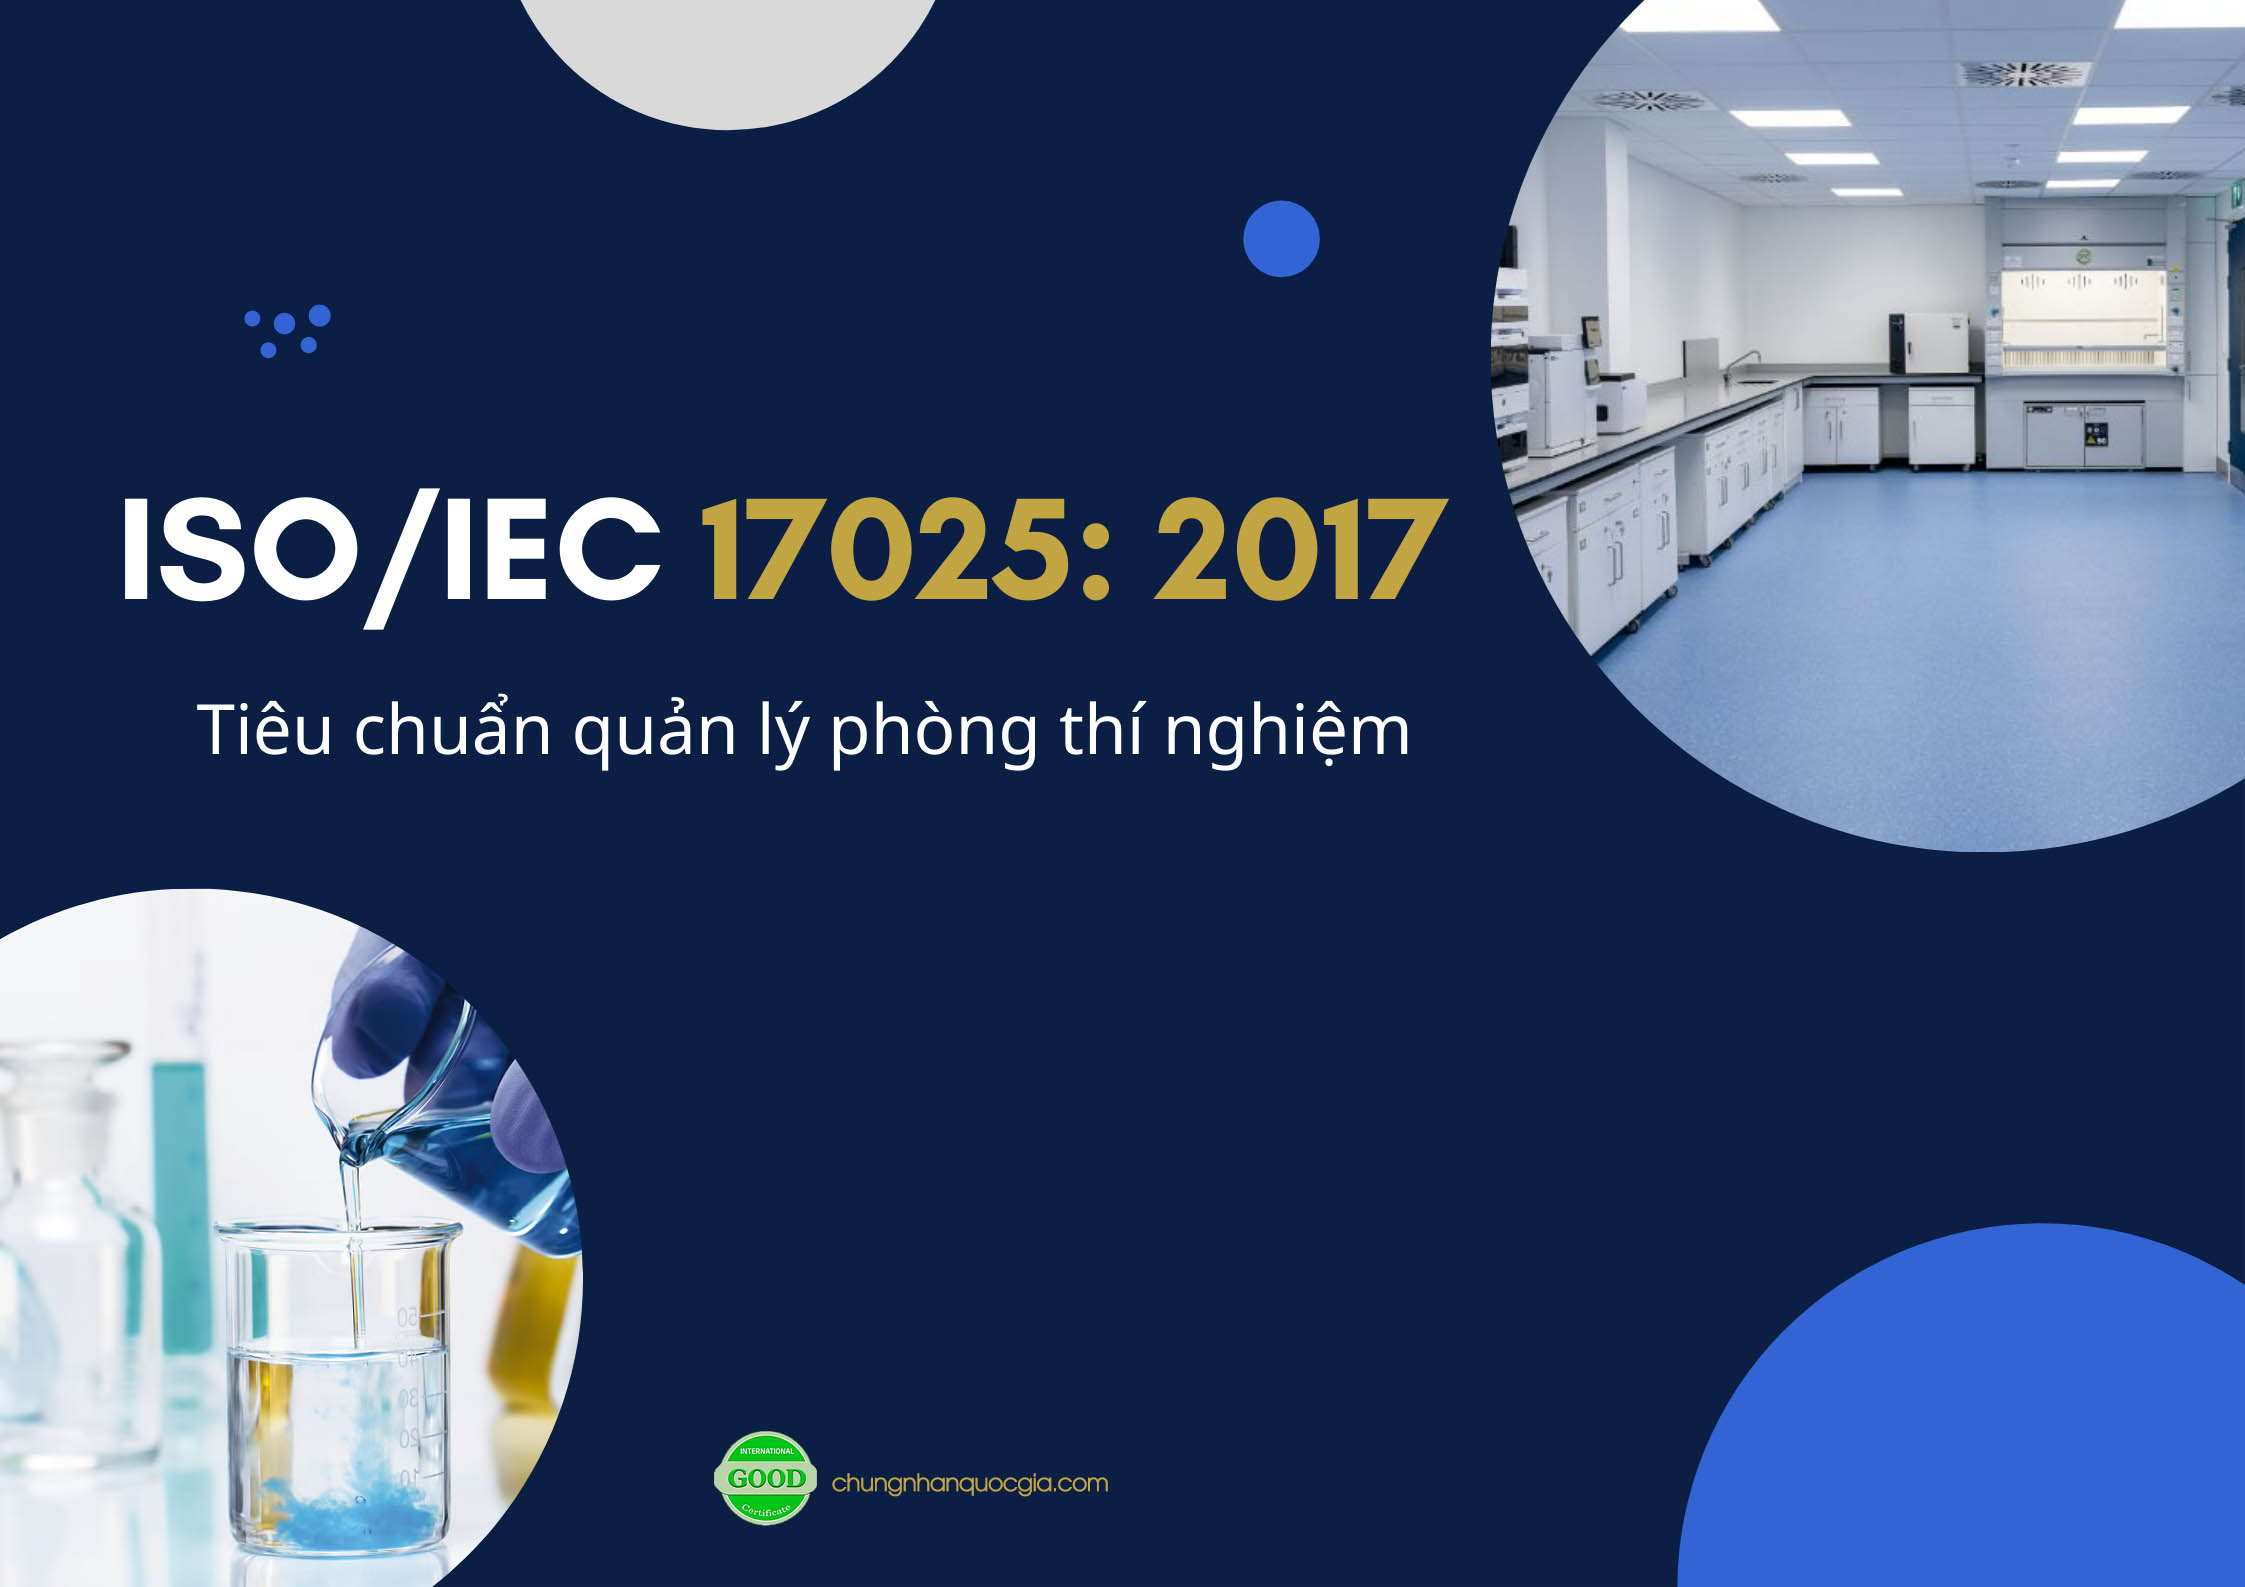 Tiêu chuẩn ISO/IEC 17025 là gì: Tổng quan tiêu chuẩn quản lý phòng thí nghiệm